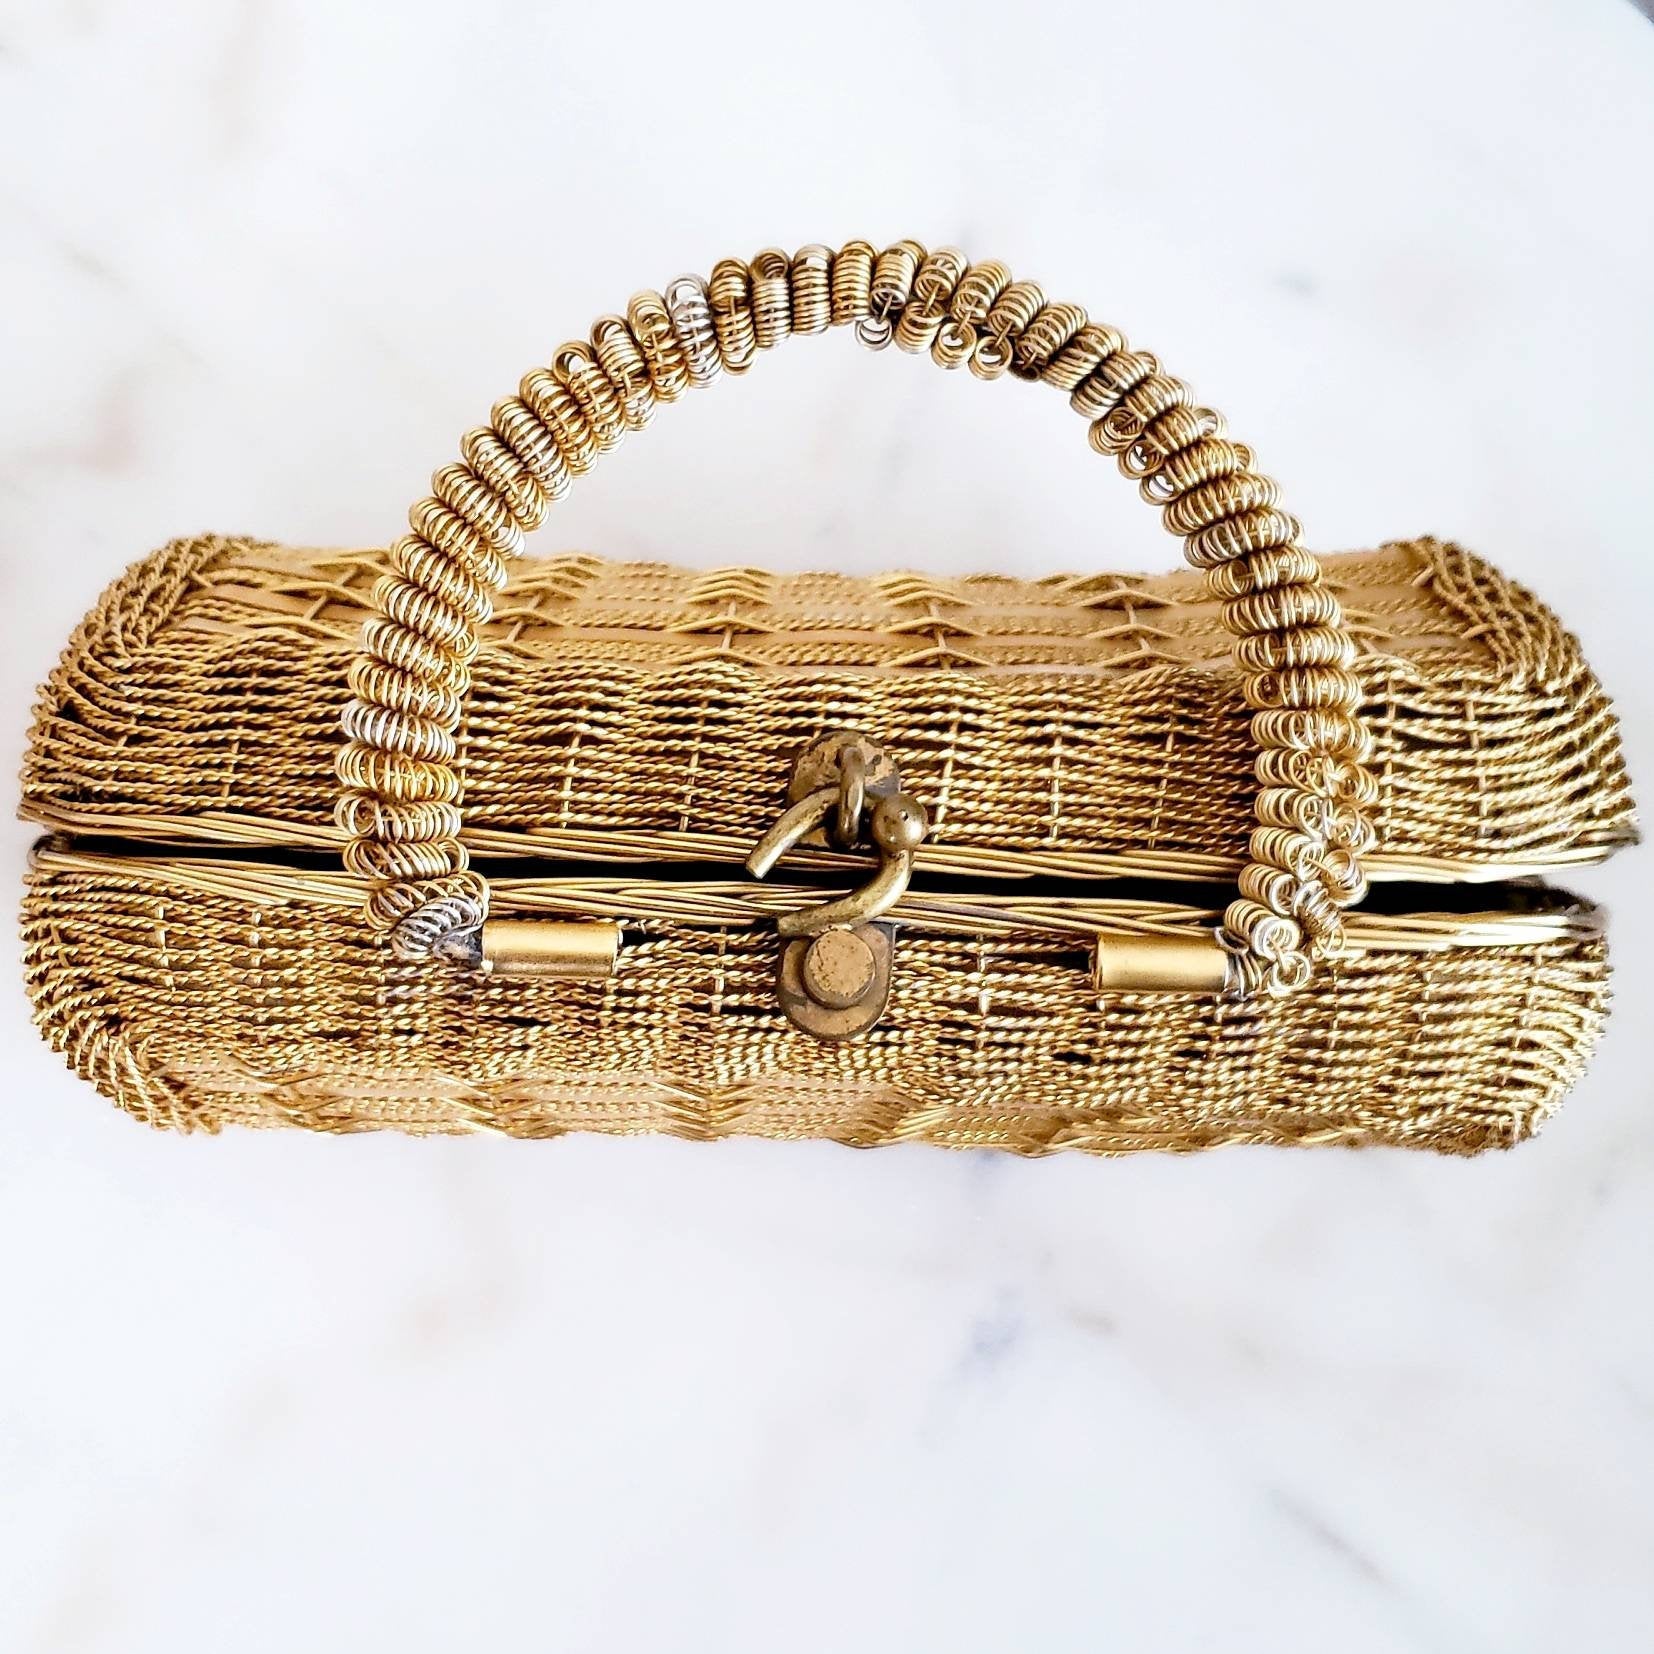 Vintage 50s/60s Belacap Italian Gold Metal Woven Handbag - ChicCityVintage